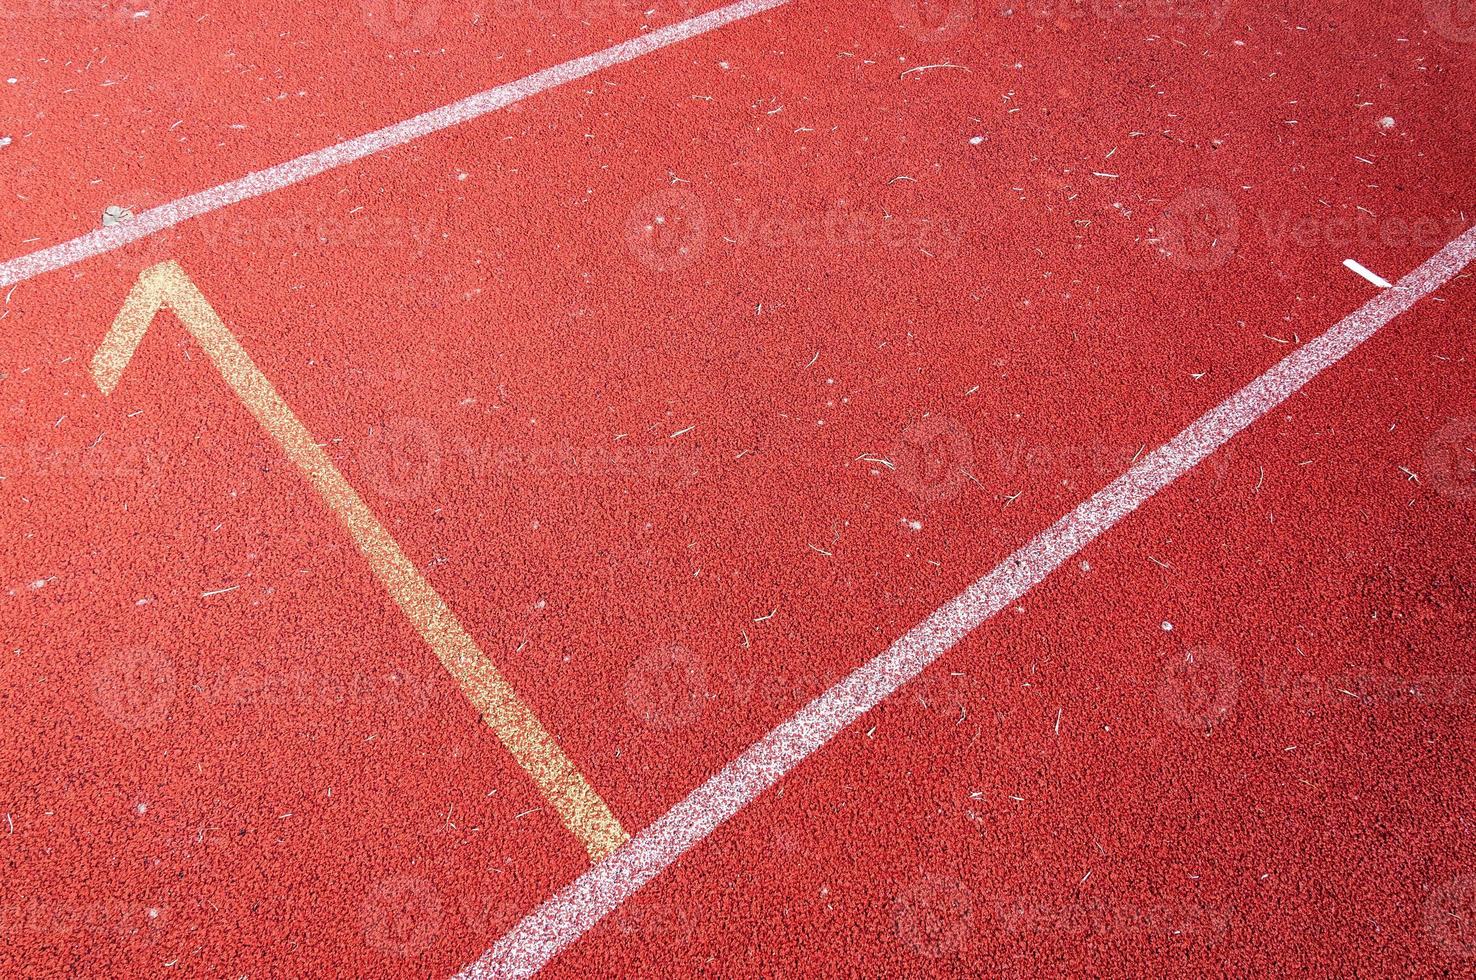 números comenzando punto en rojo corriendo pista, correr pista ,directo atletismo corriendo pista a deporte estadio foto